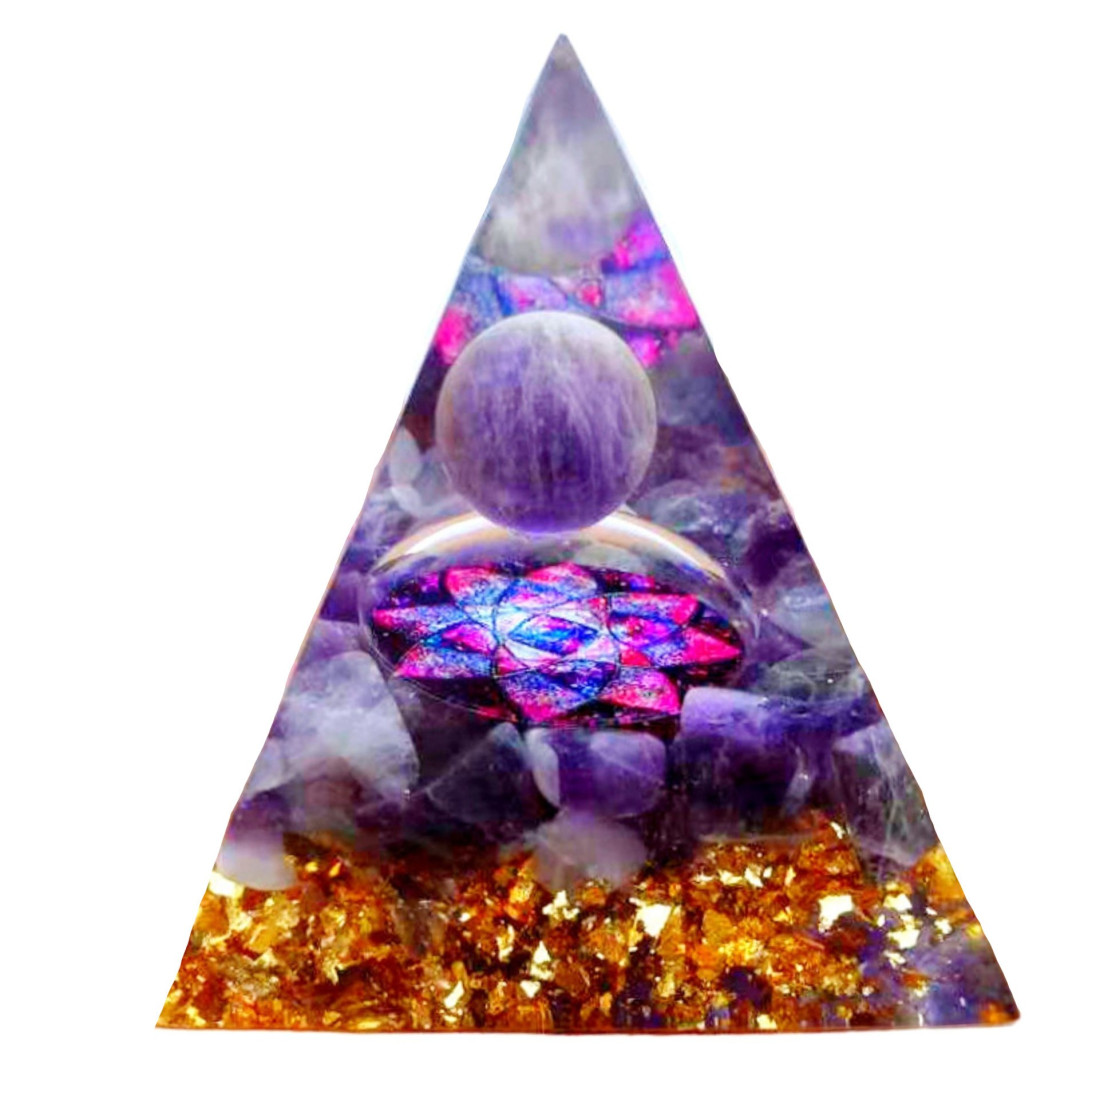 Pyramide orgonite orgone en résine et boule améthyste motif fleur org2 6cm